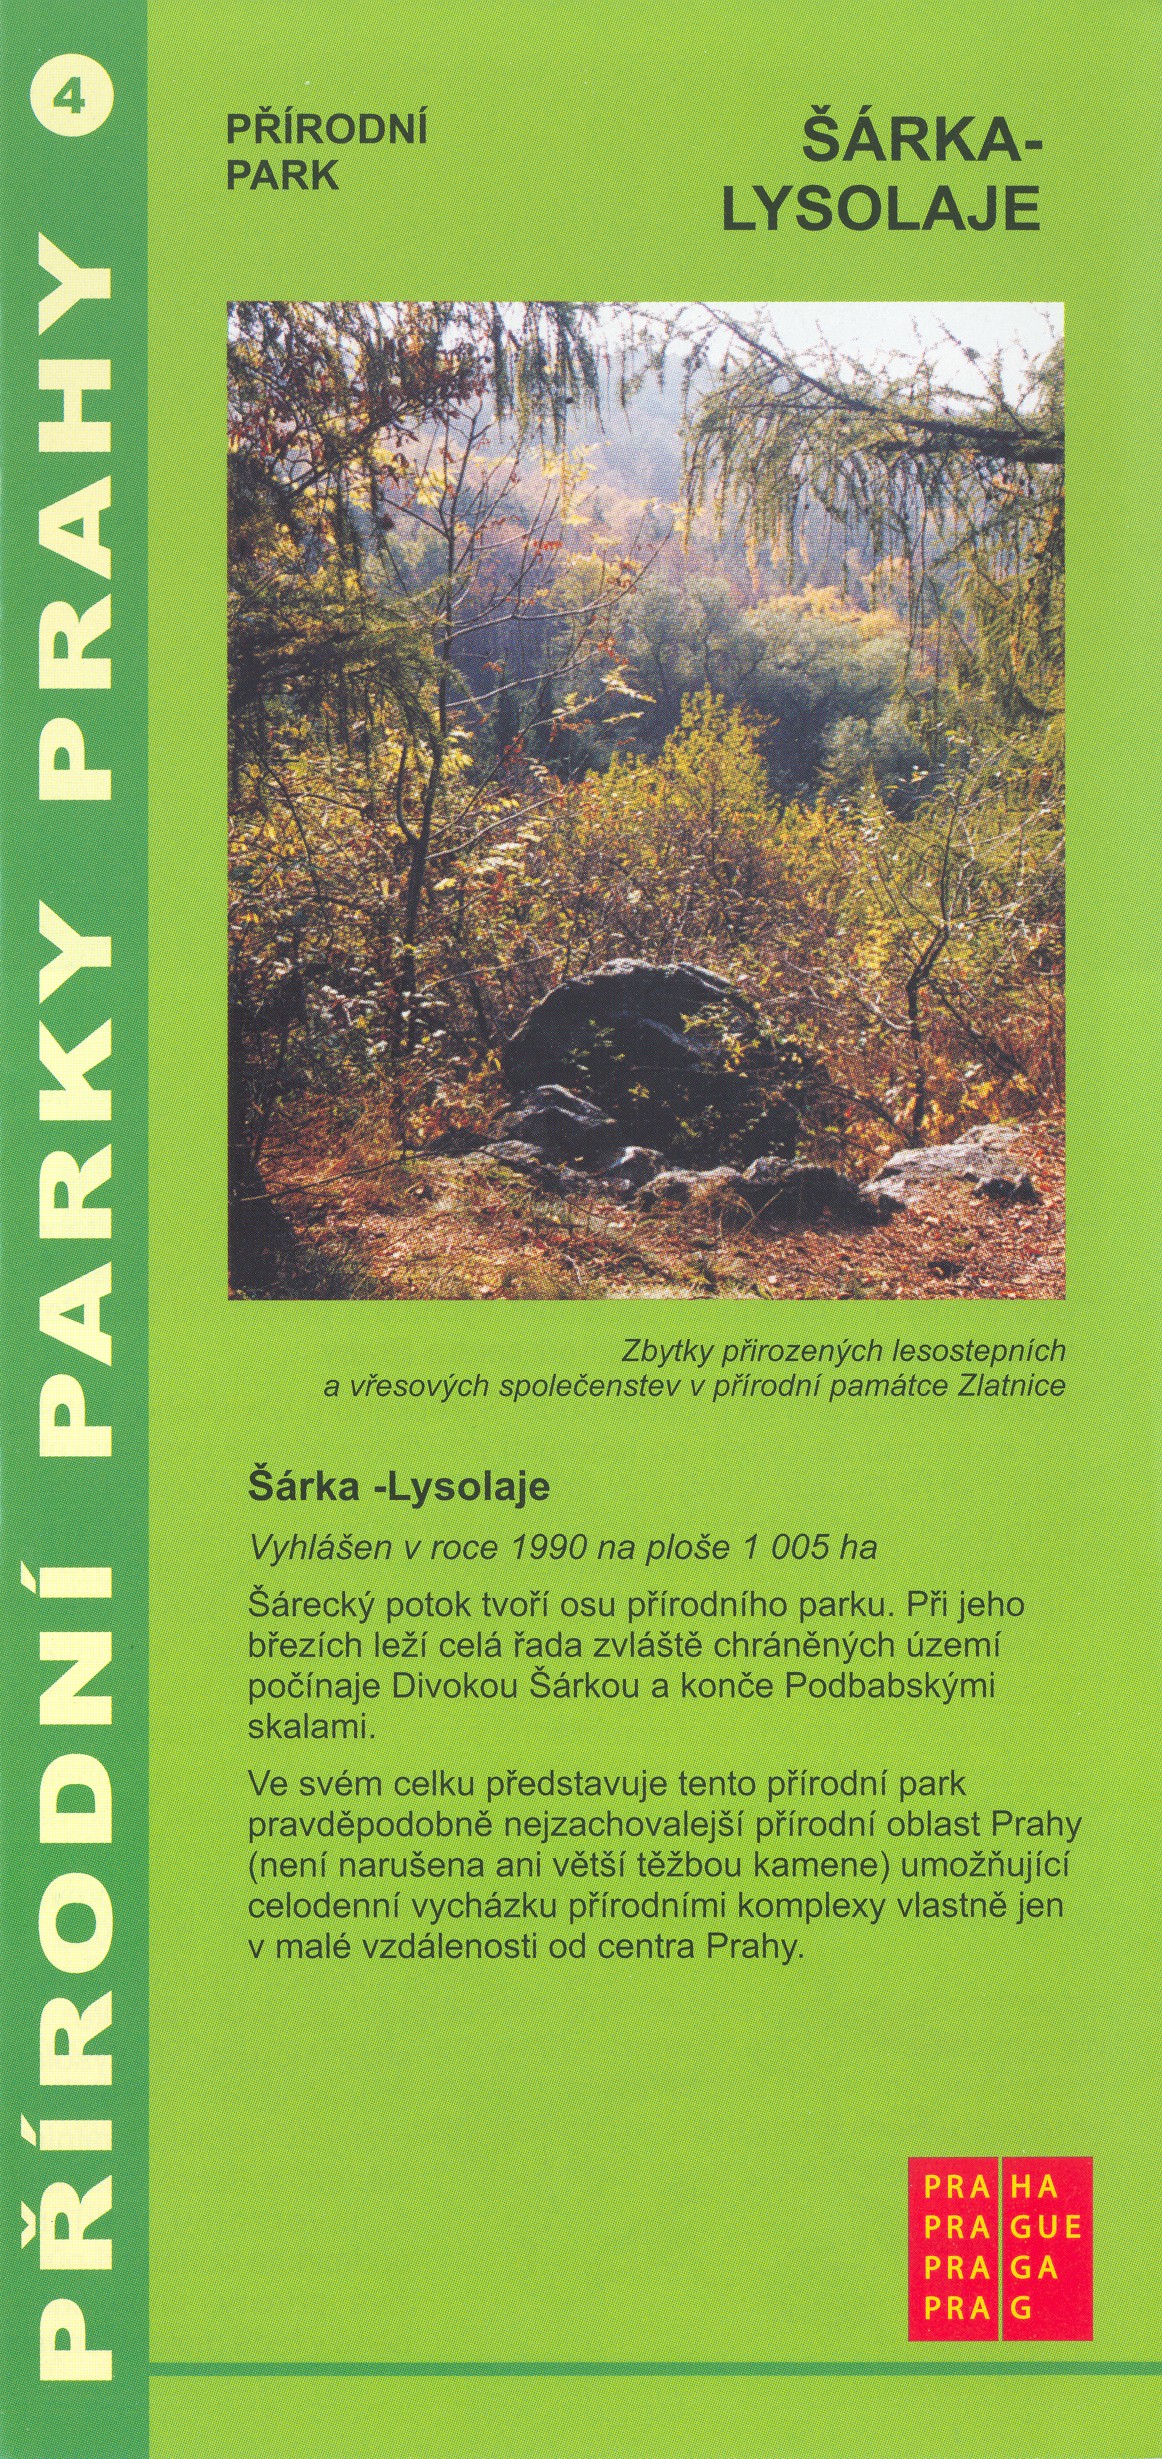 informační materiál Přírodní parky Prahy, č.4 - Šárka-Lysolaje